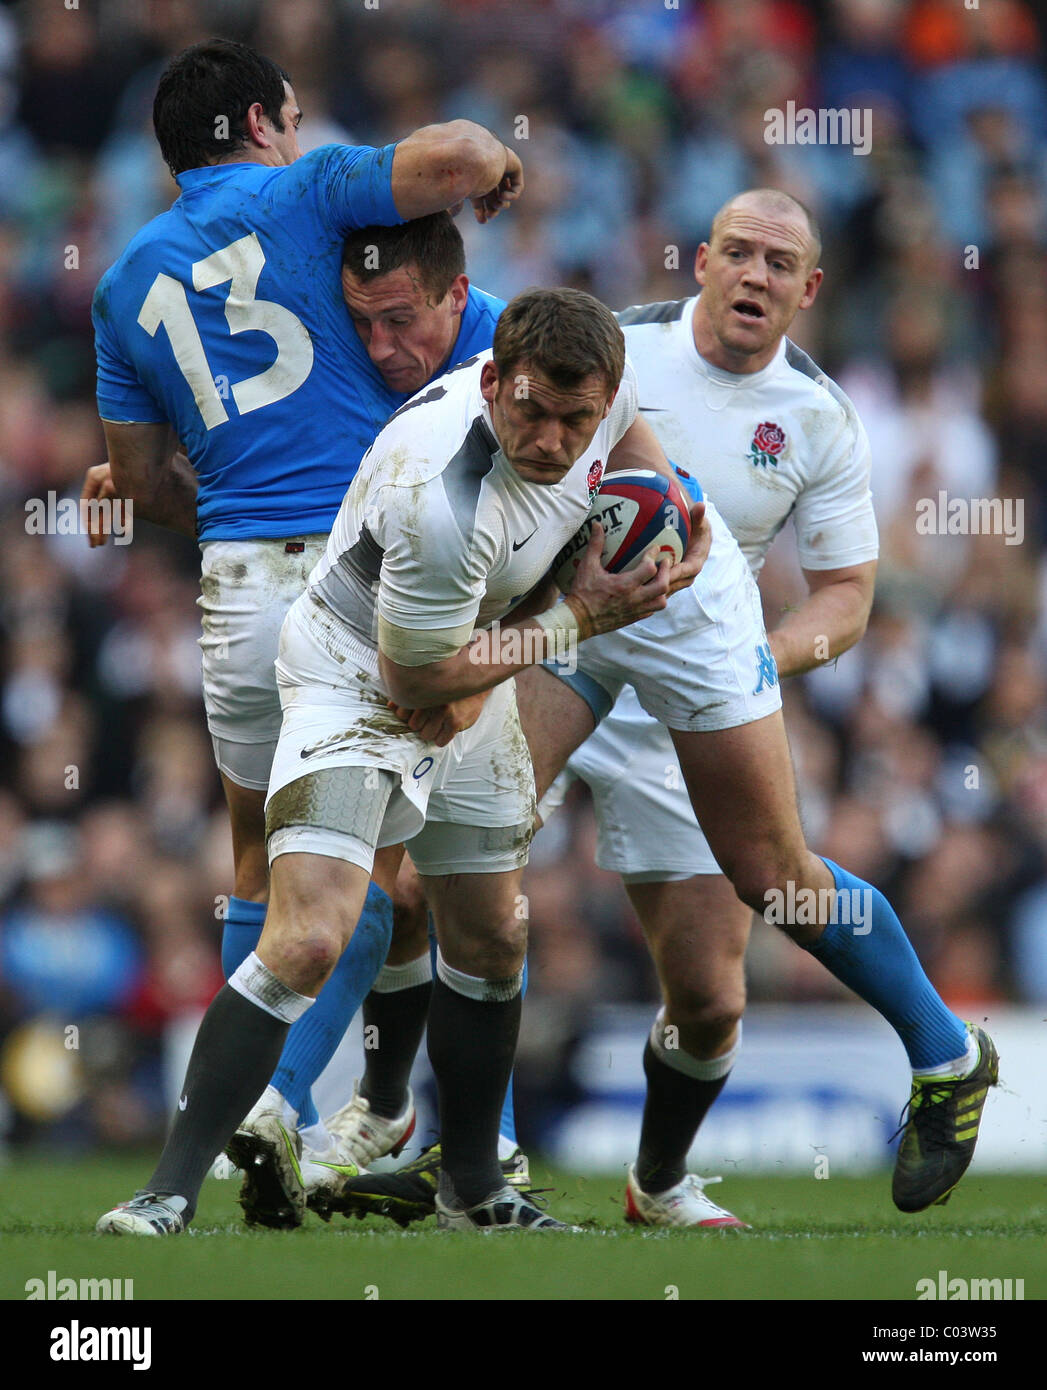 12.02.2011 tournoi de Rugby à Twickenham. L'Angleterre v Italie. M. Cueto de l'Angleterre en action. Banque D'Images